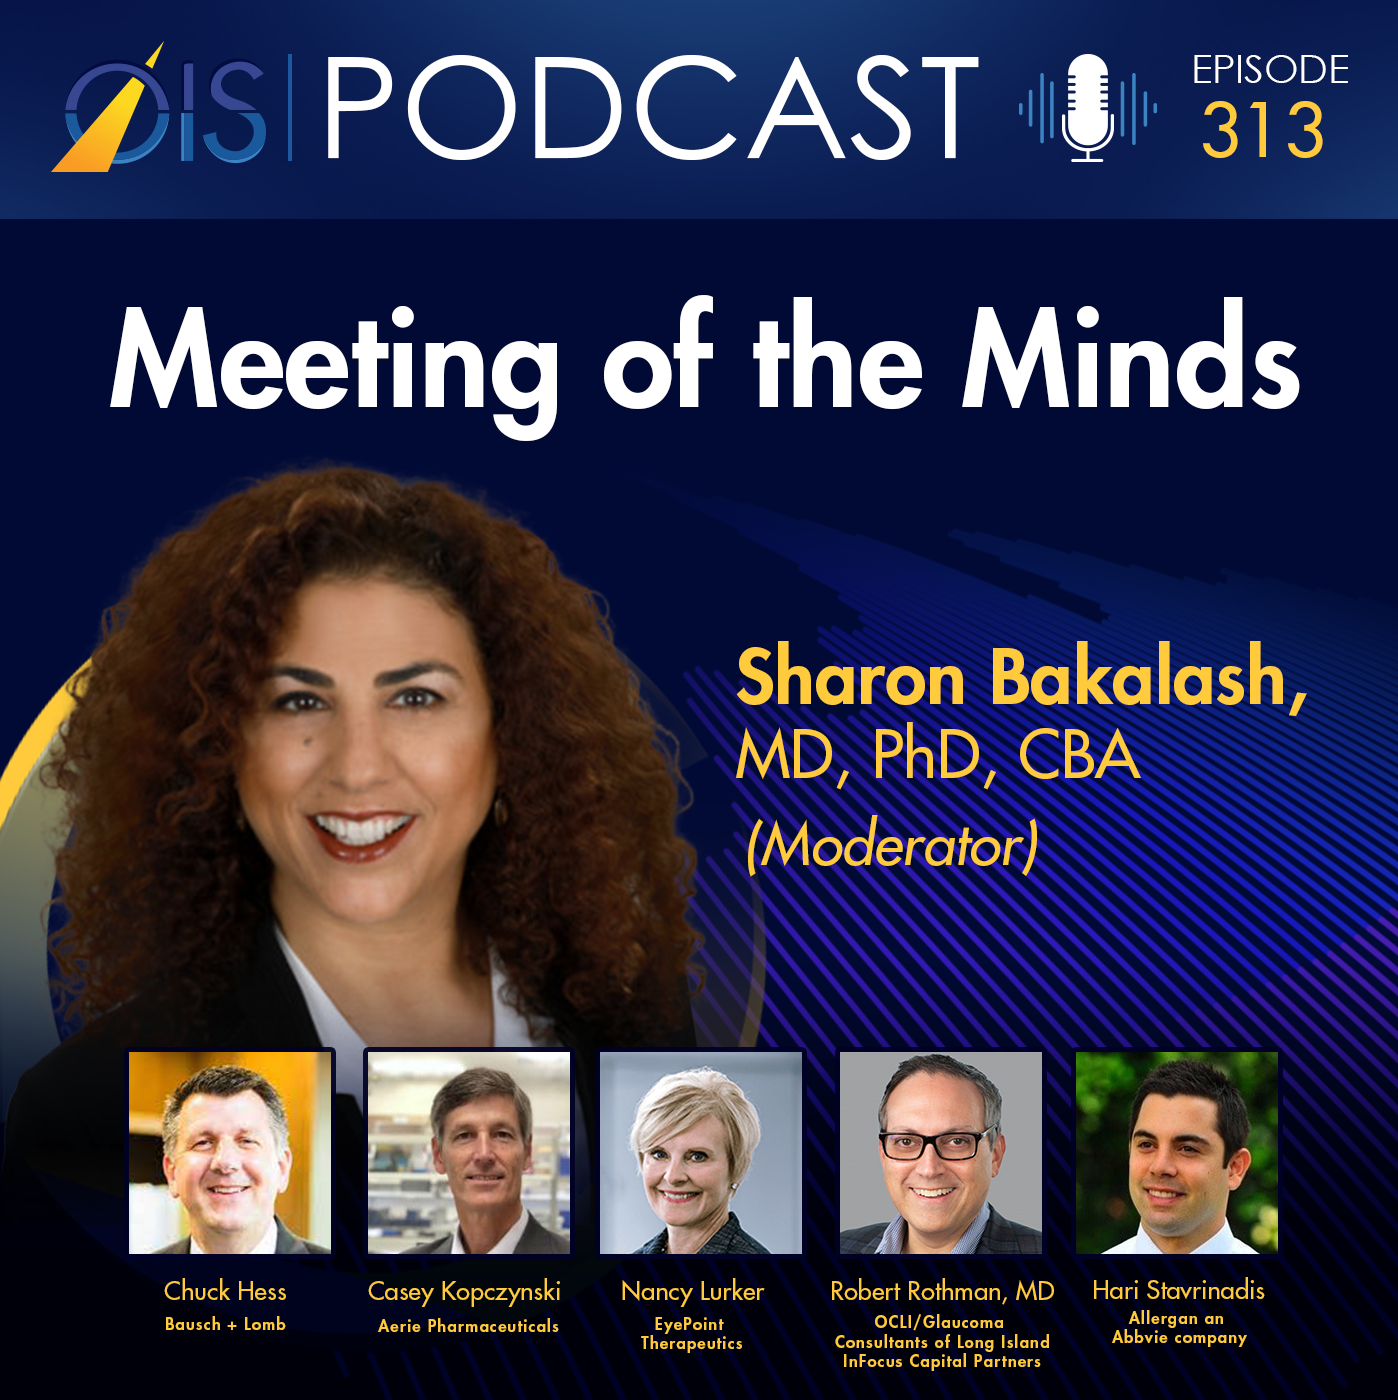 Sharon Bakalash, MD, PhD, CBA - Panel